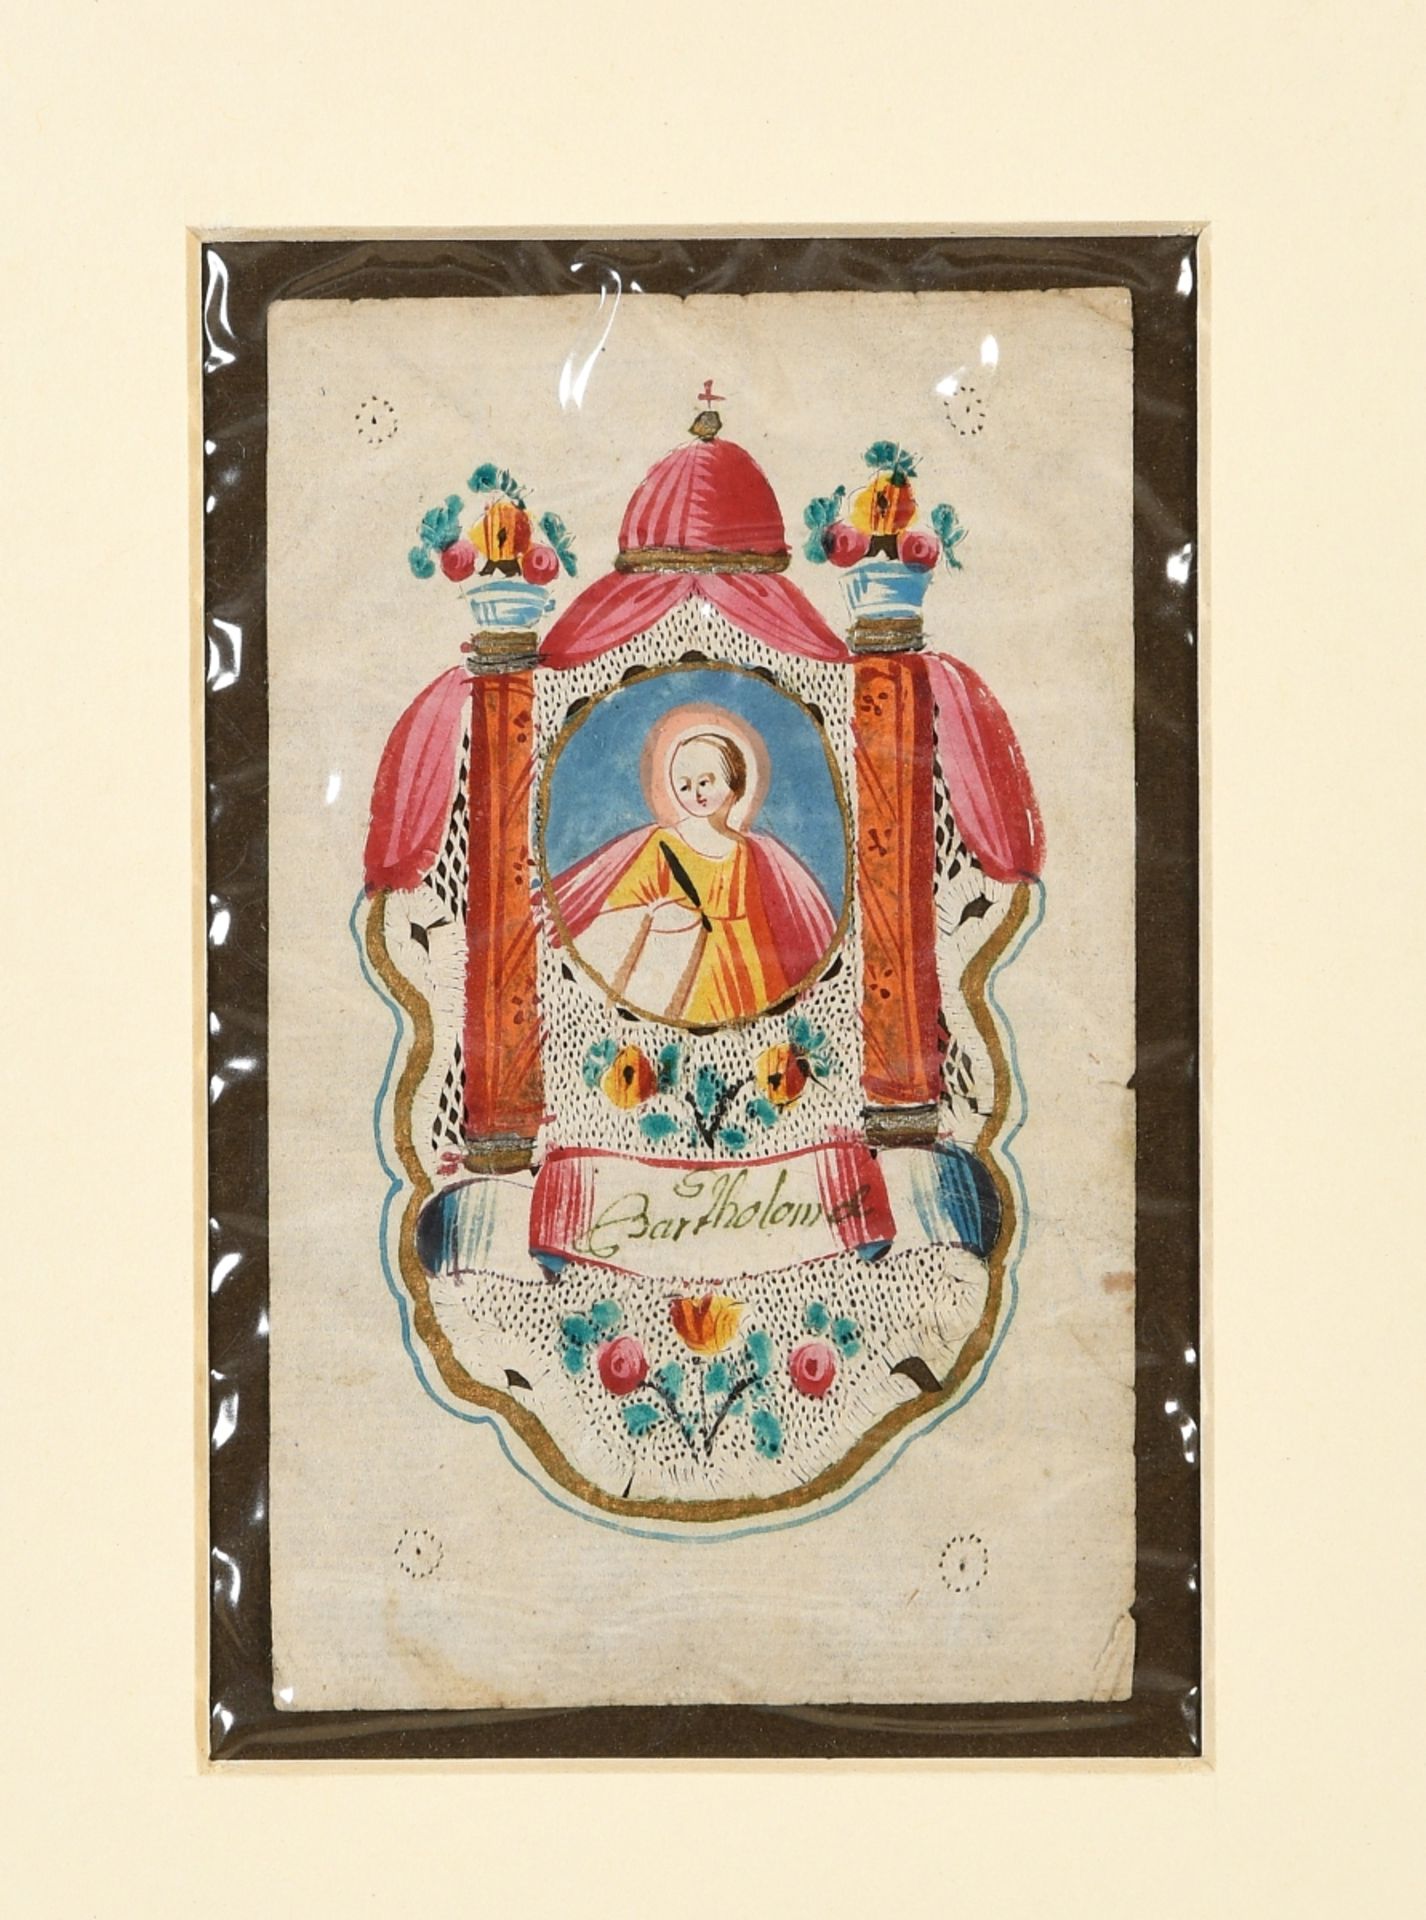 Heiligenbild "S. Bartholomae"